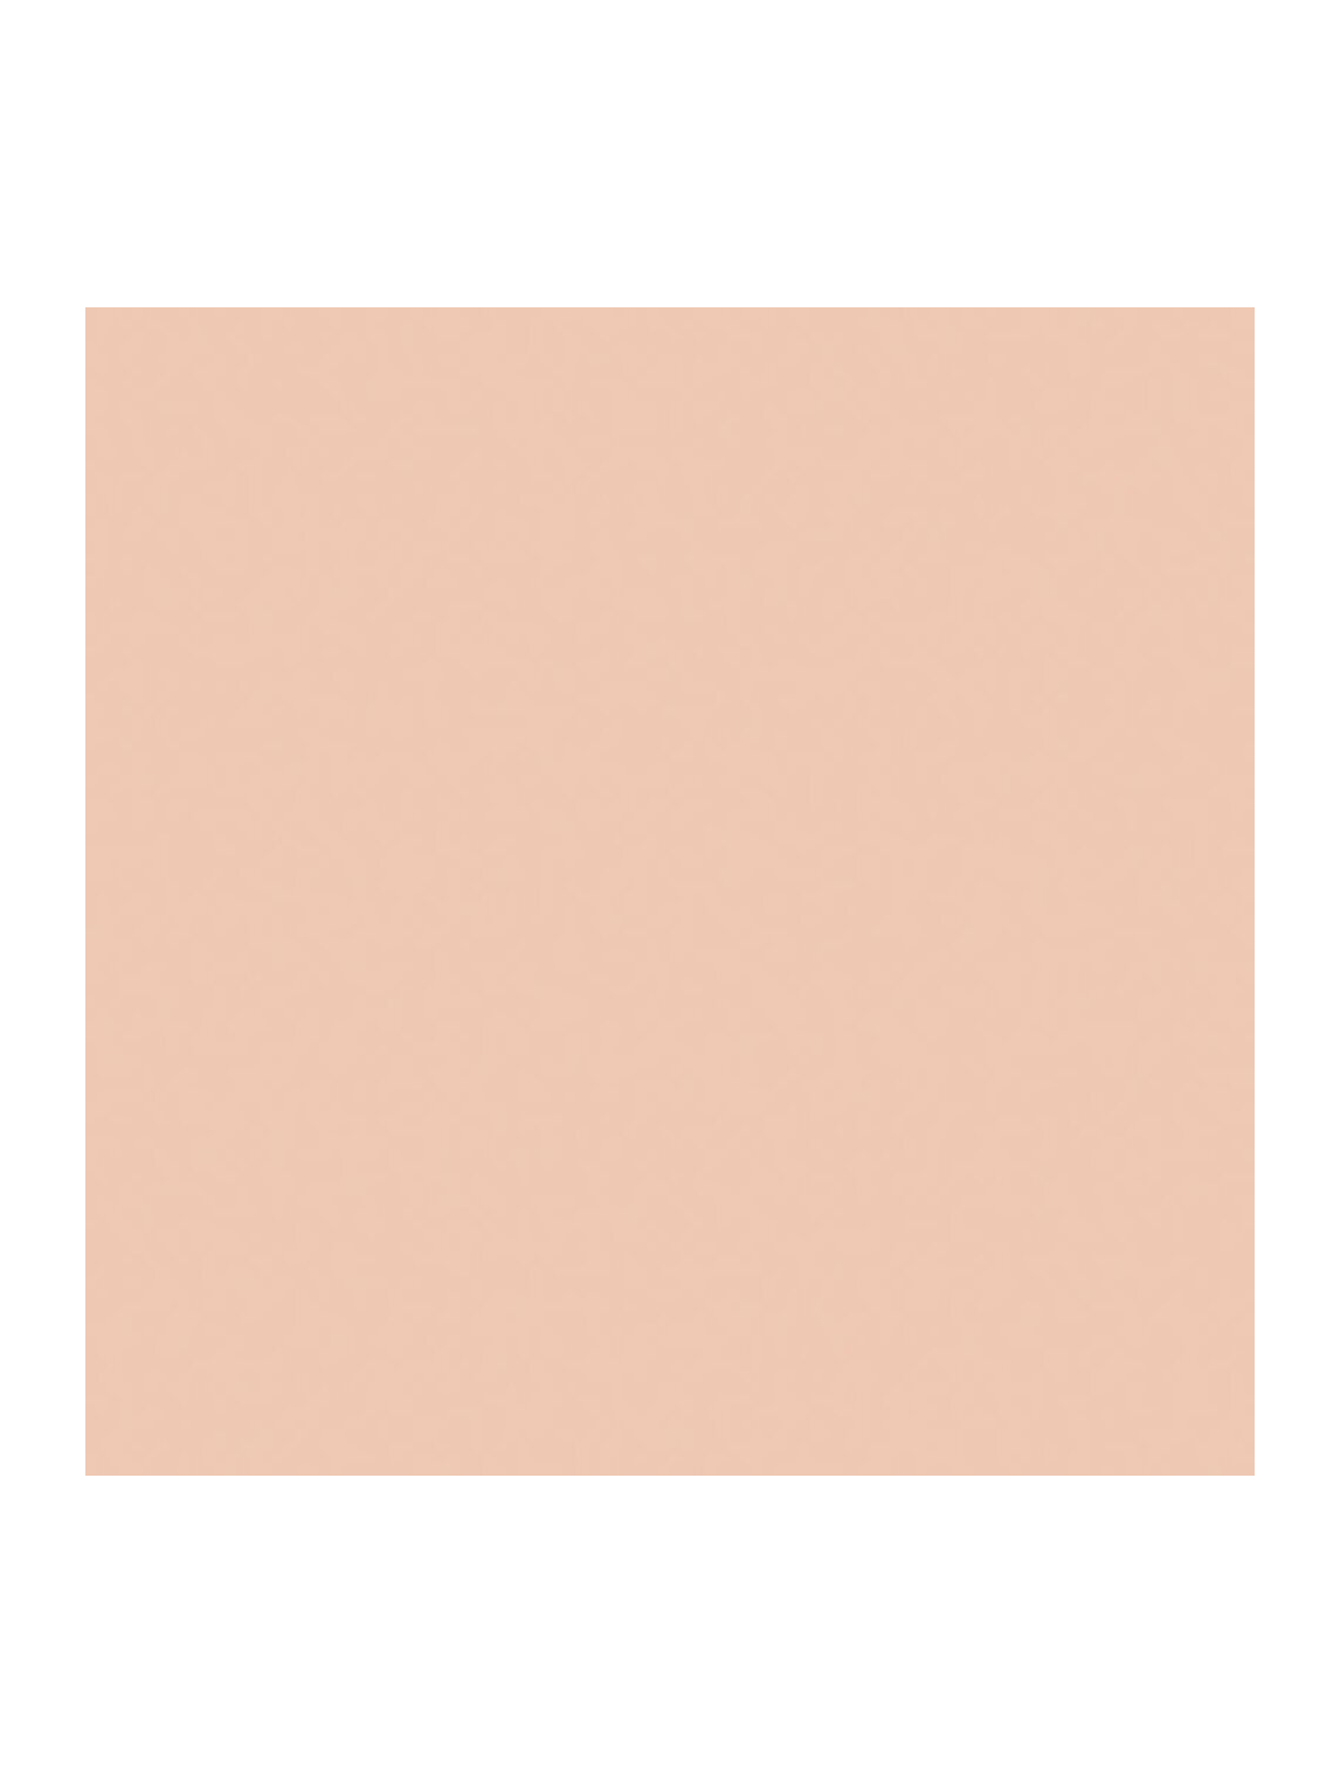 Водостойкий корректор для лица и тела Dior Backstage Flash Perfector Concealer, 2CR Холодный Розовый, 11 мл - Обтравка1